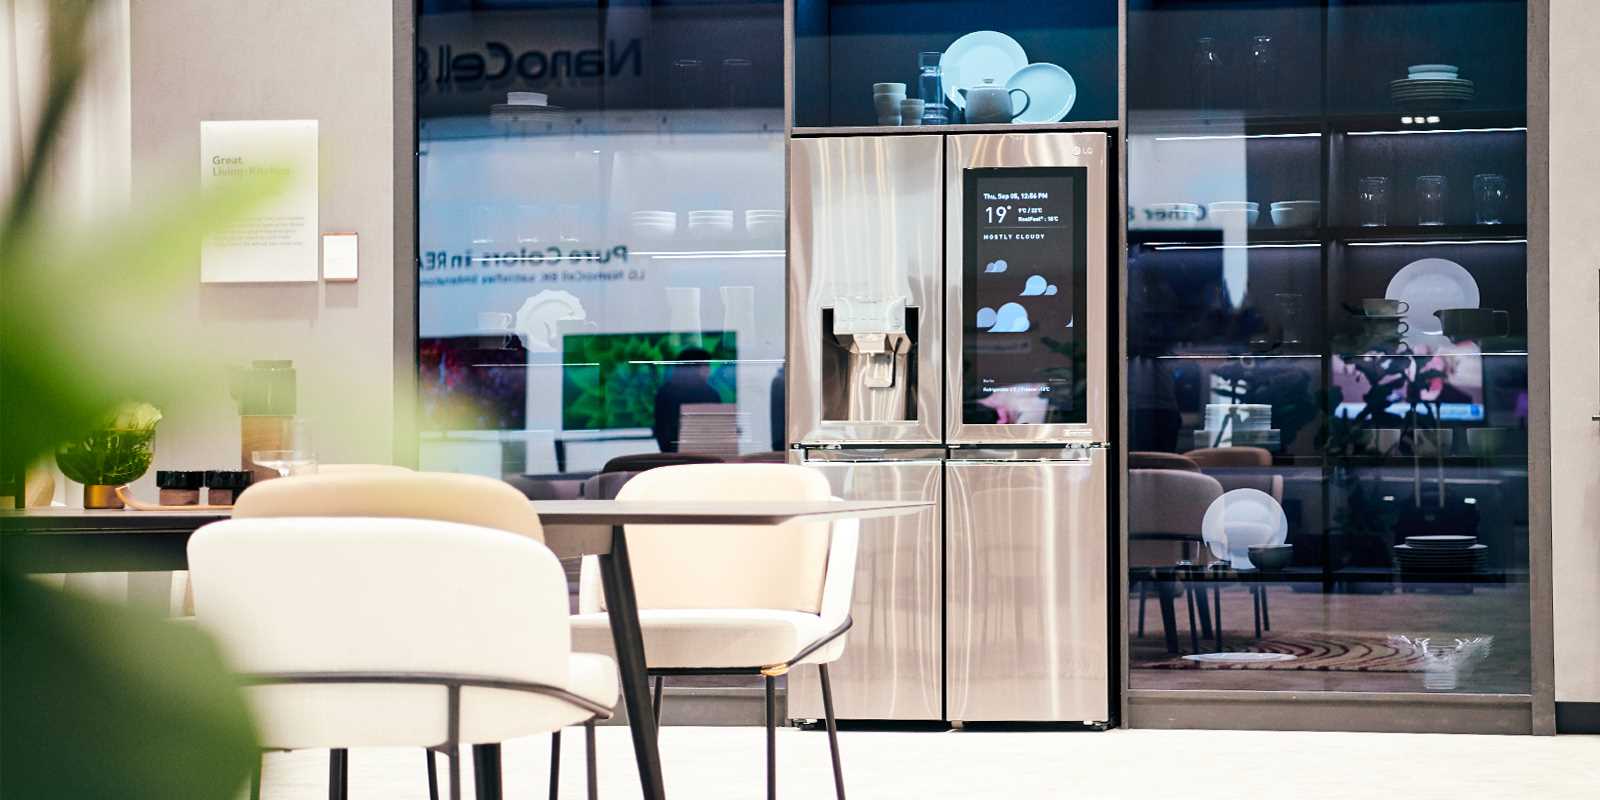 LG presentó en IFA 2019 su casa inteligente y conectada (4)